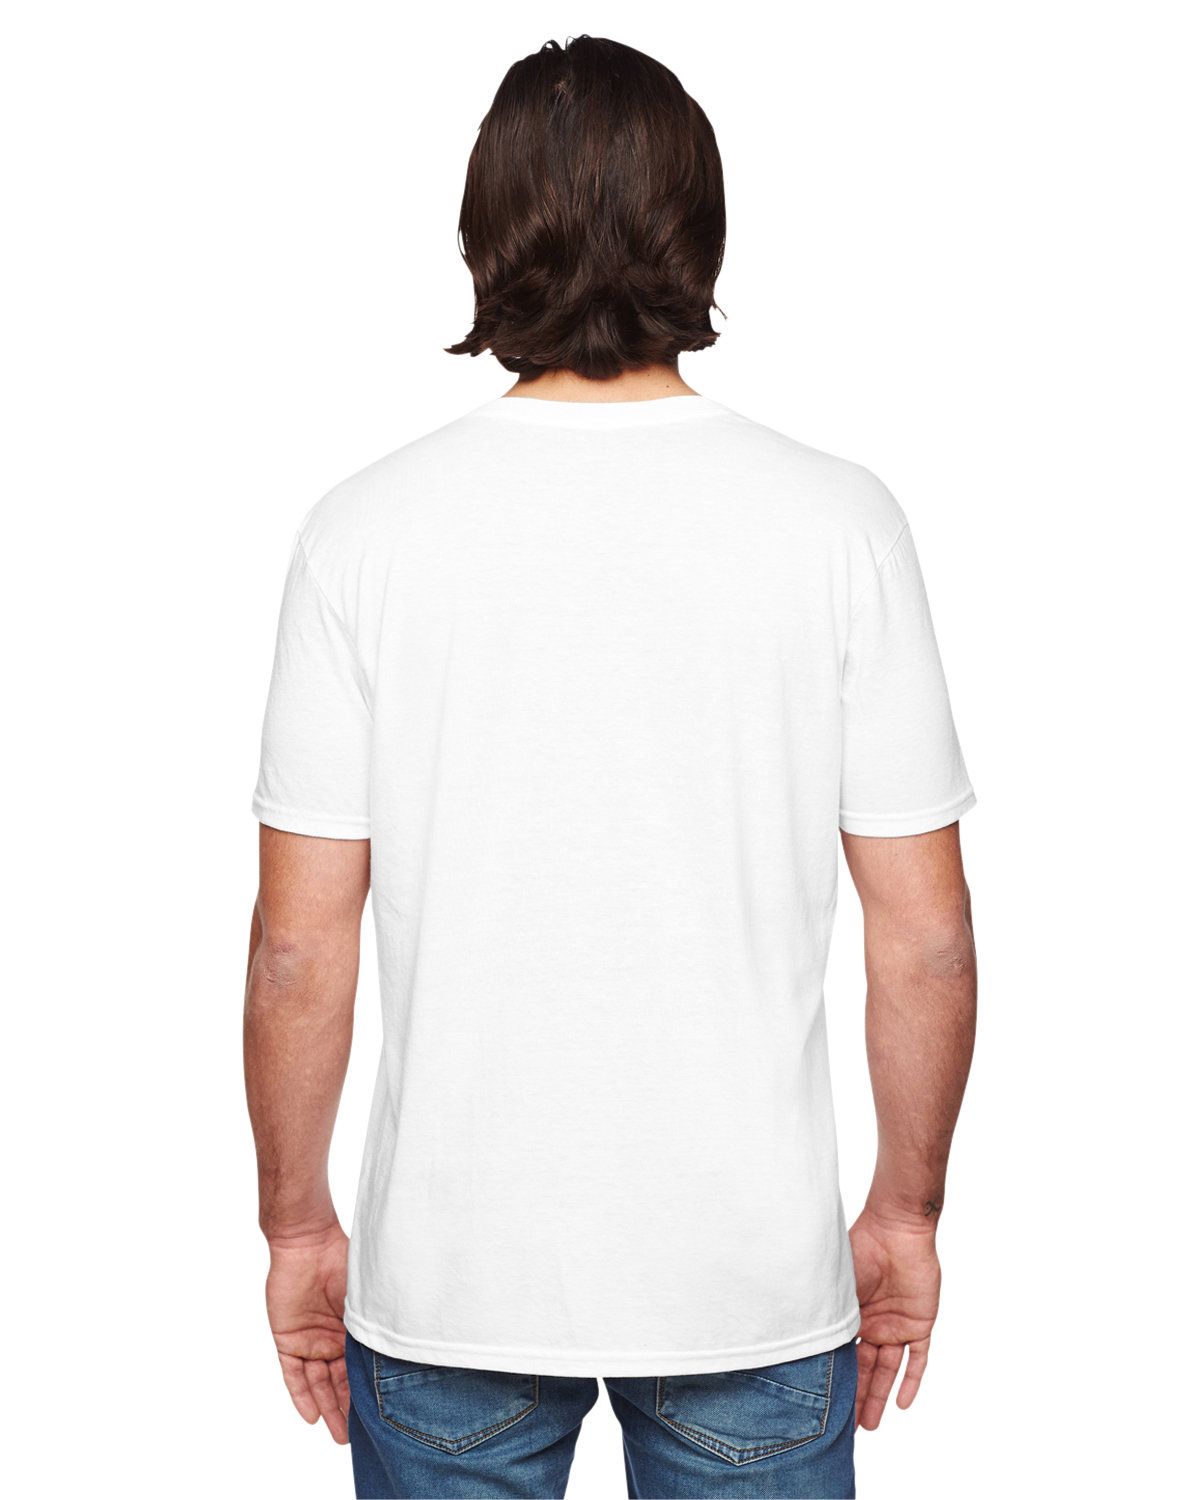 'Anvil 6752 Adult Triblend V Neck T-Shirt'